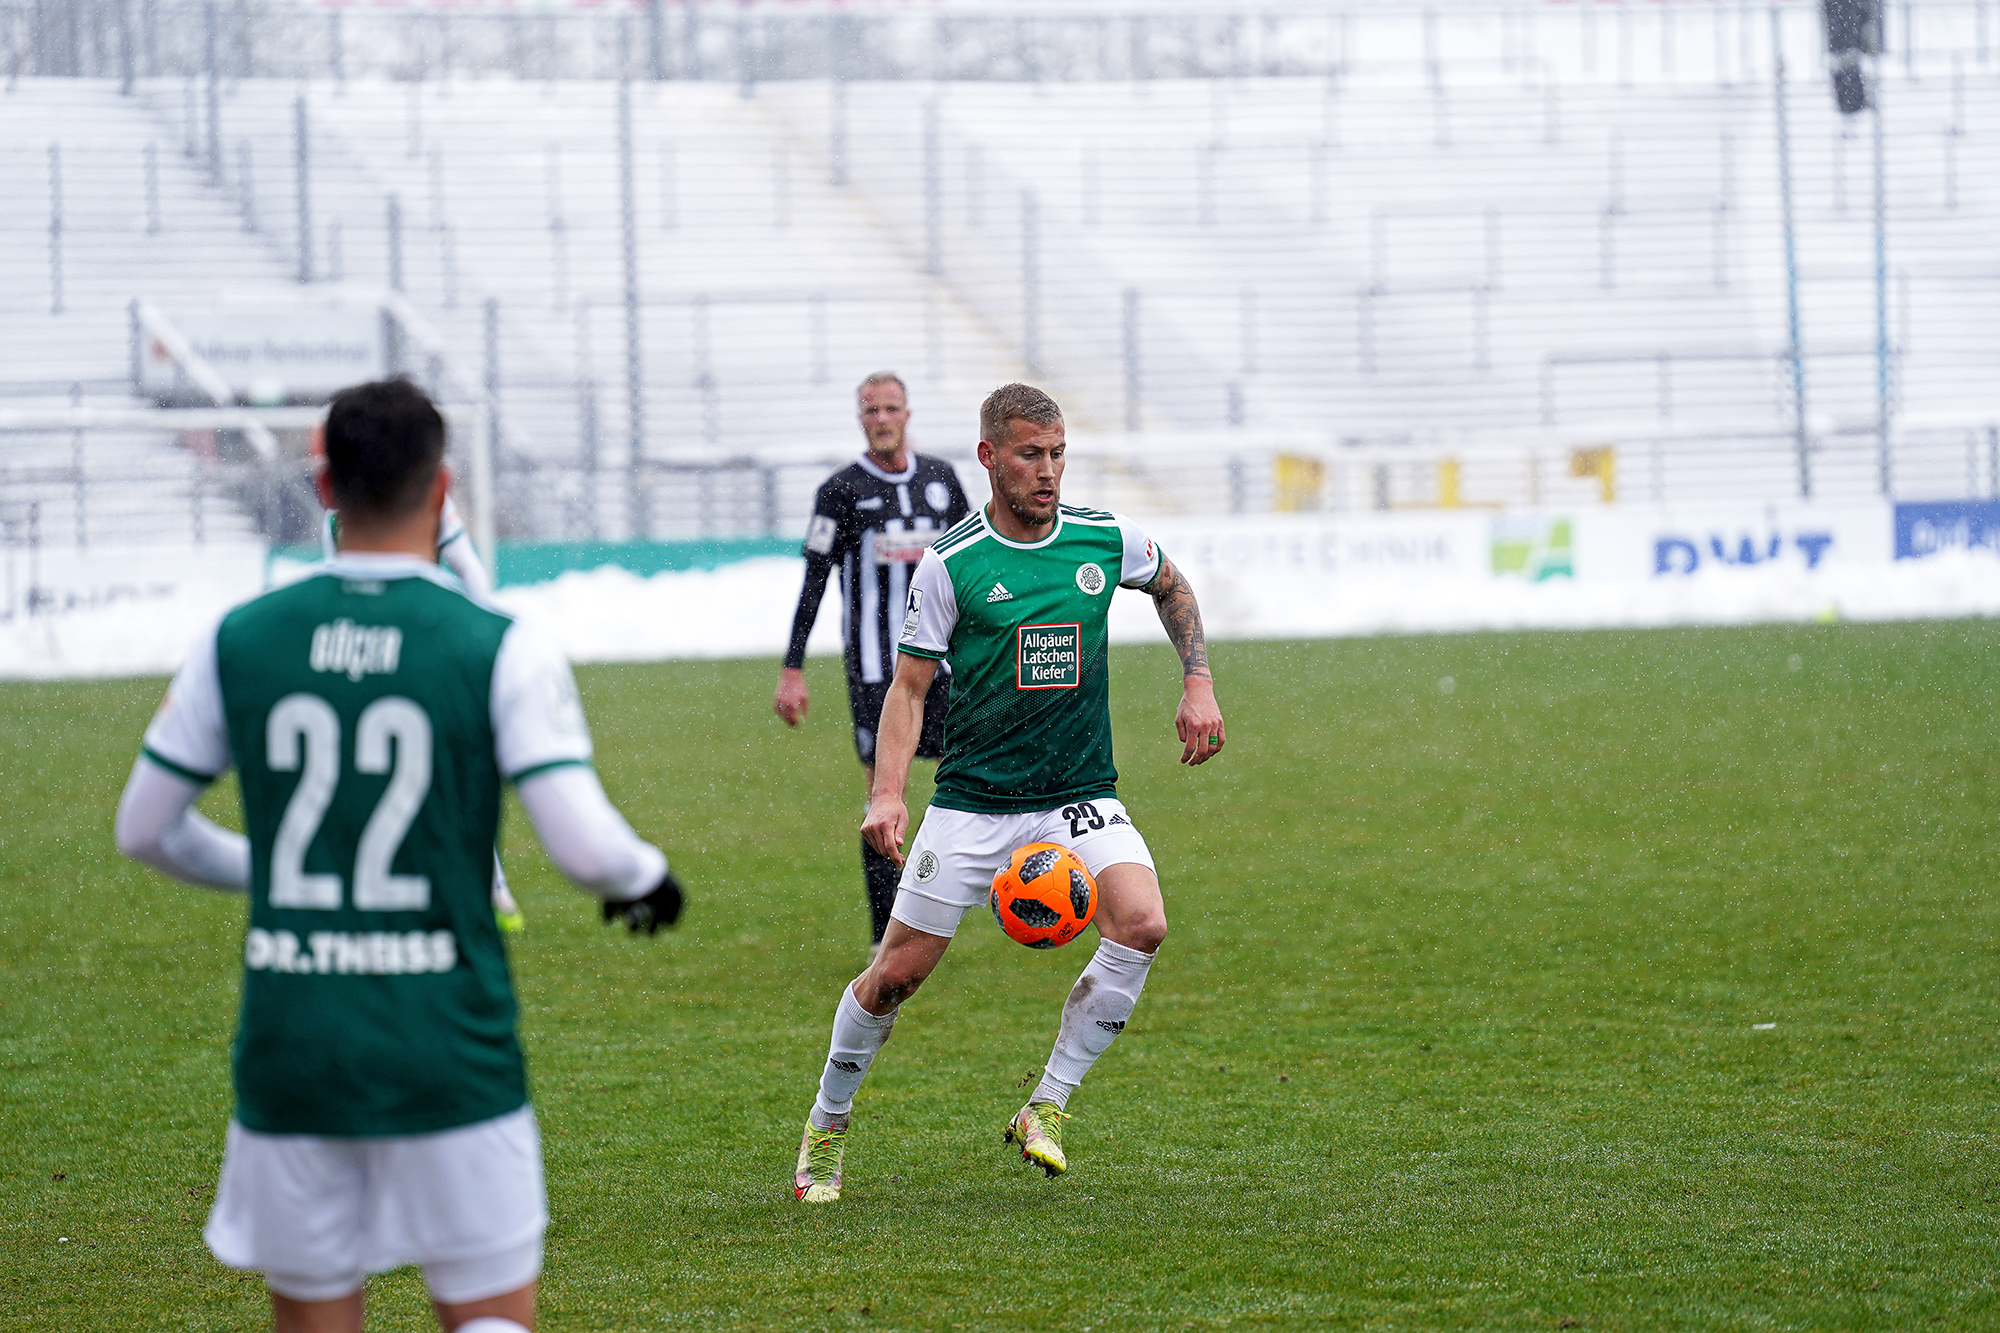 02.04.2022 | Saison 2021/22 | FC 08 Homburg | VfR Aalen